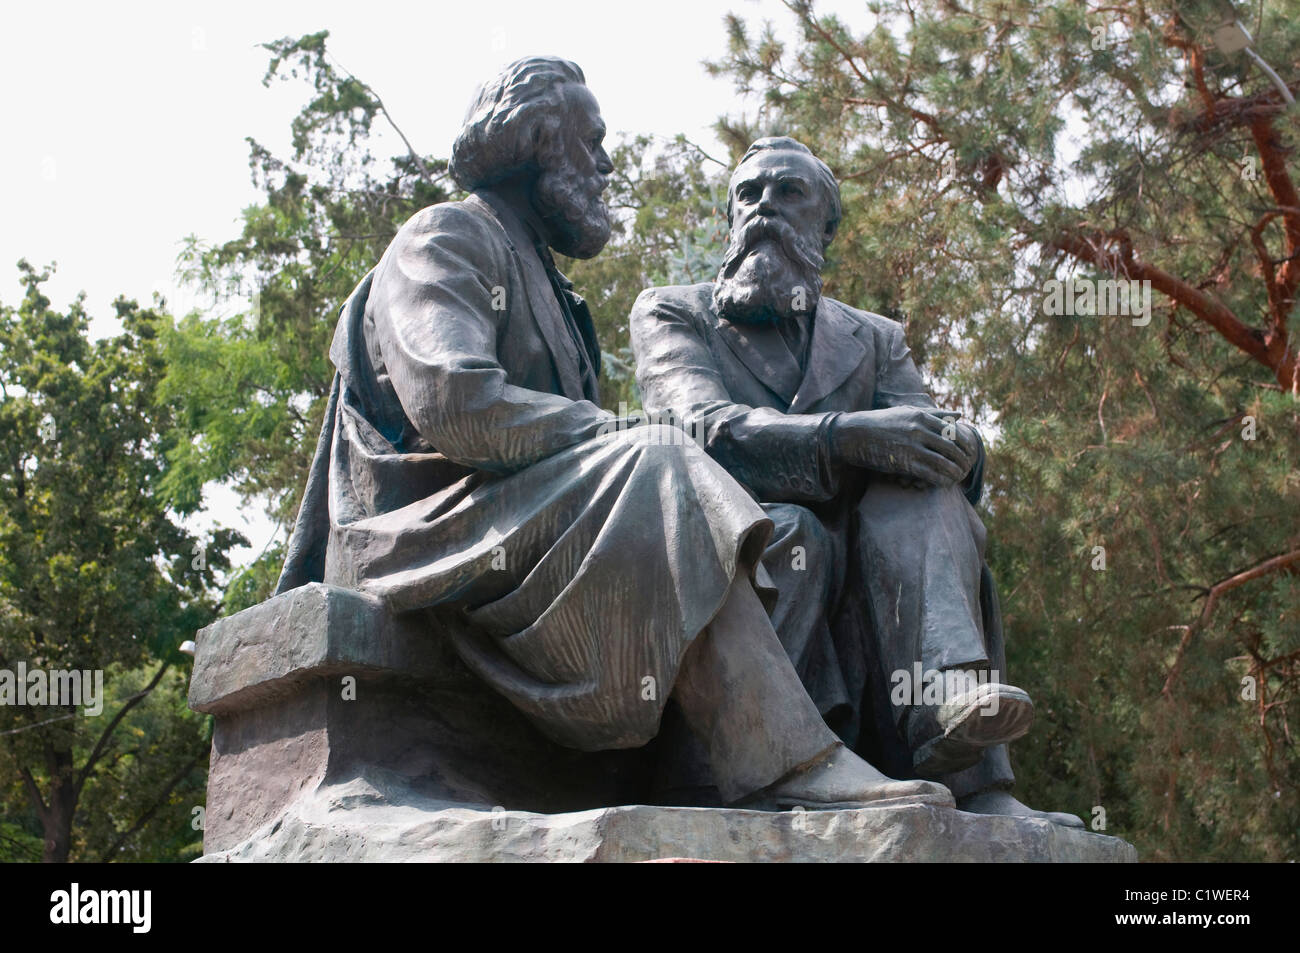 Le Kyrgyzstan, Bishkek, Statue de Marx et Engels Banque D'Images